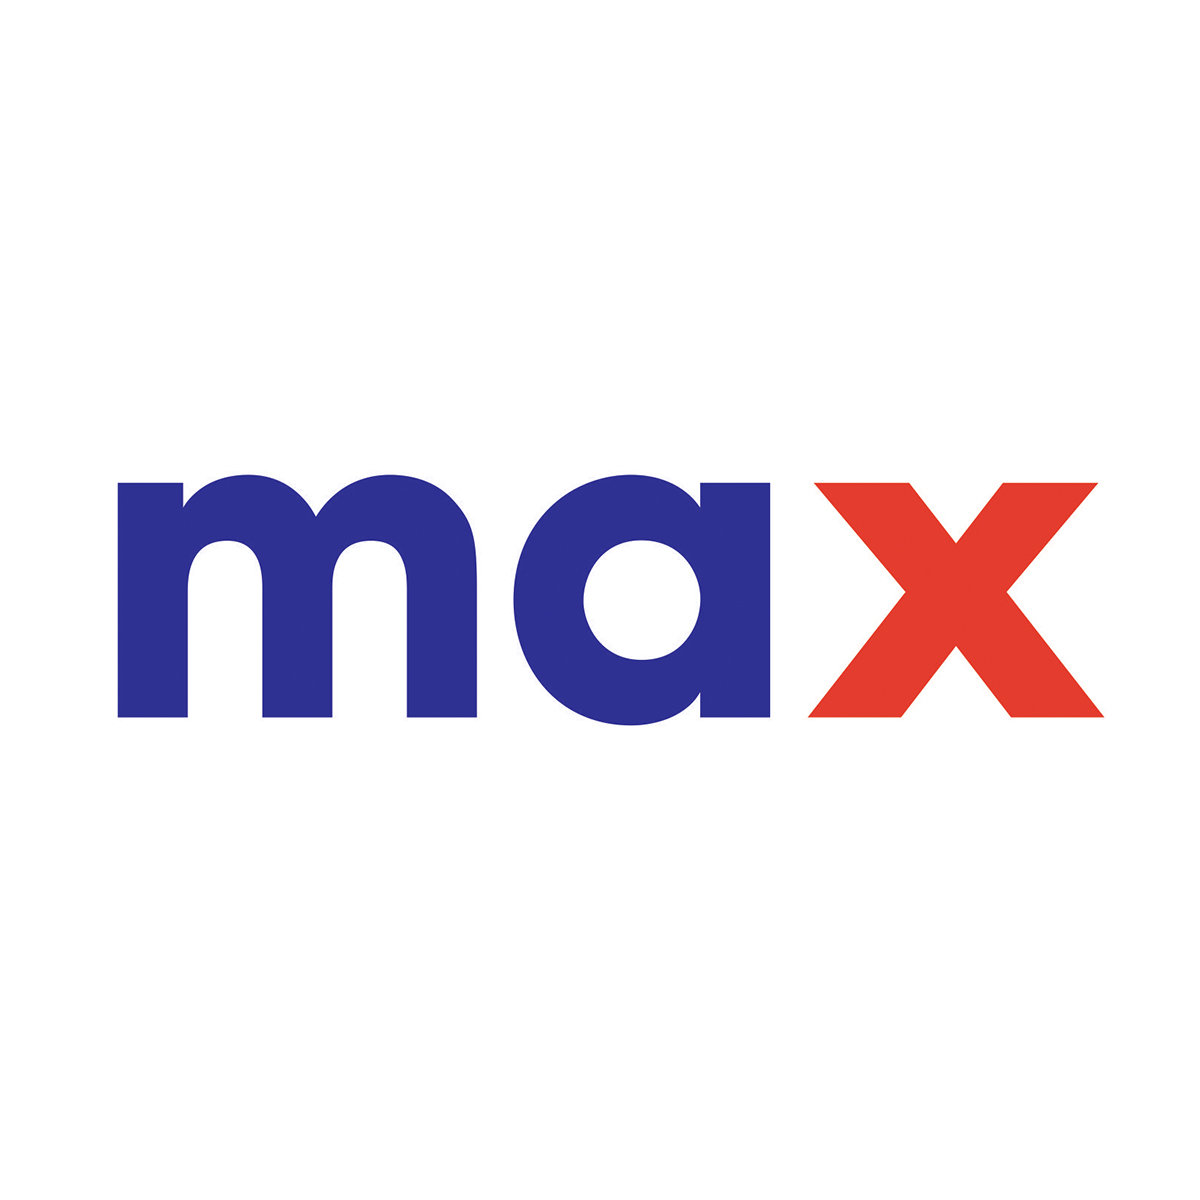 Max, Next Galleria Malls